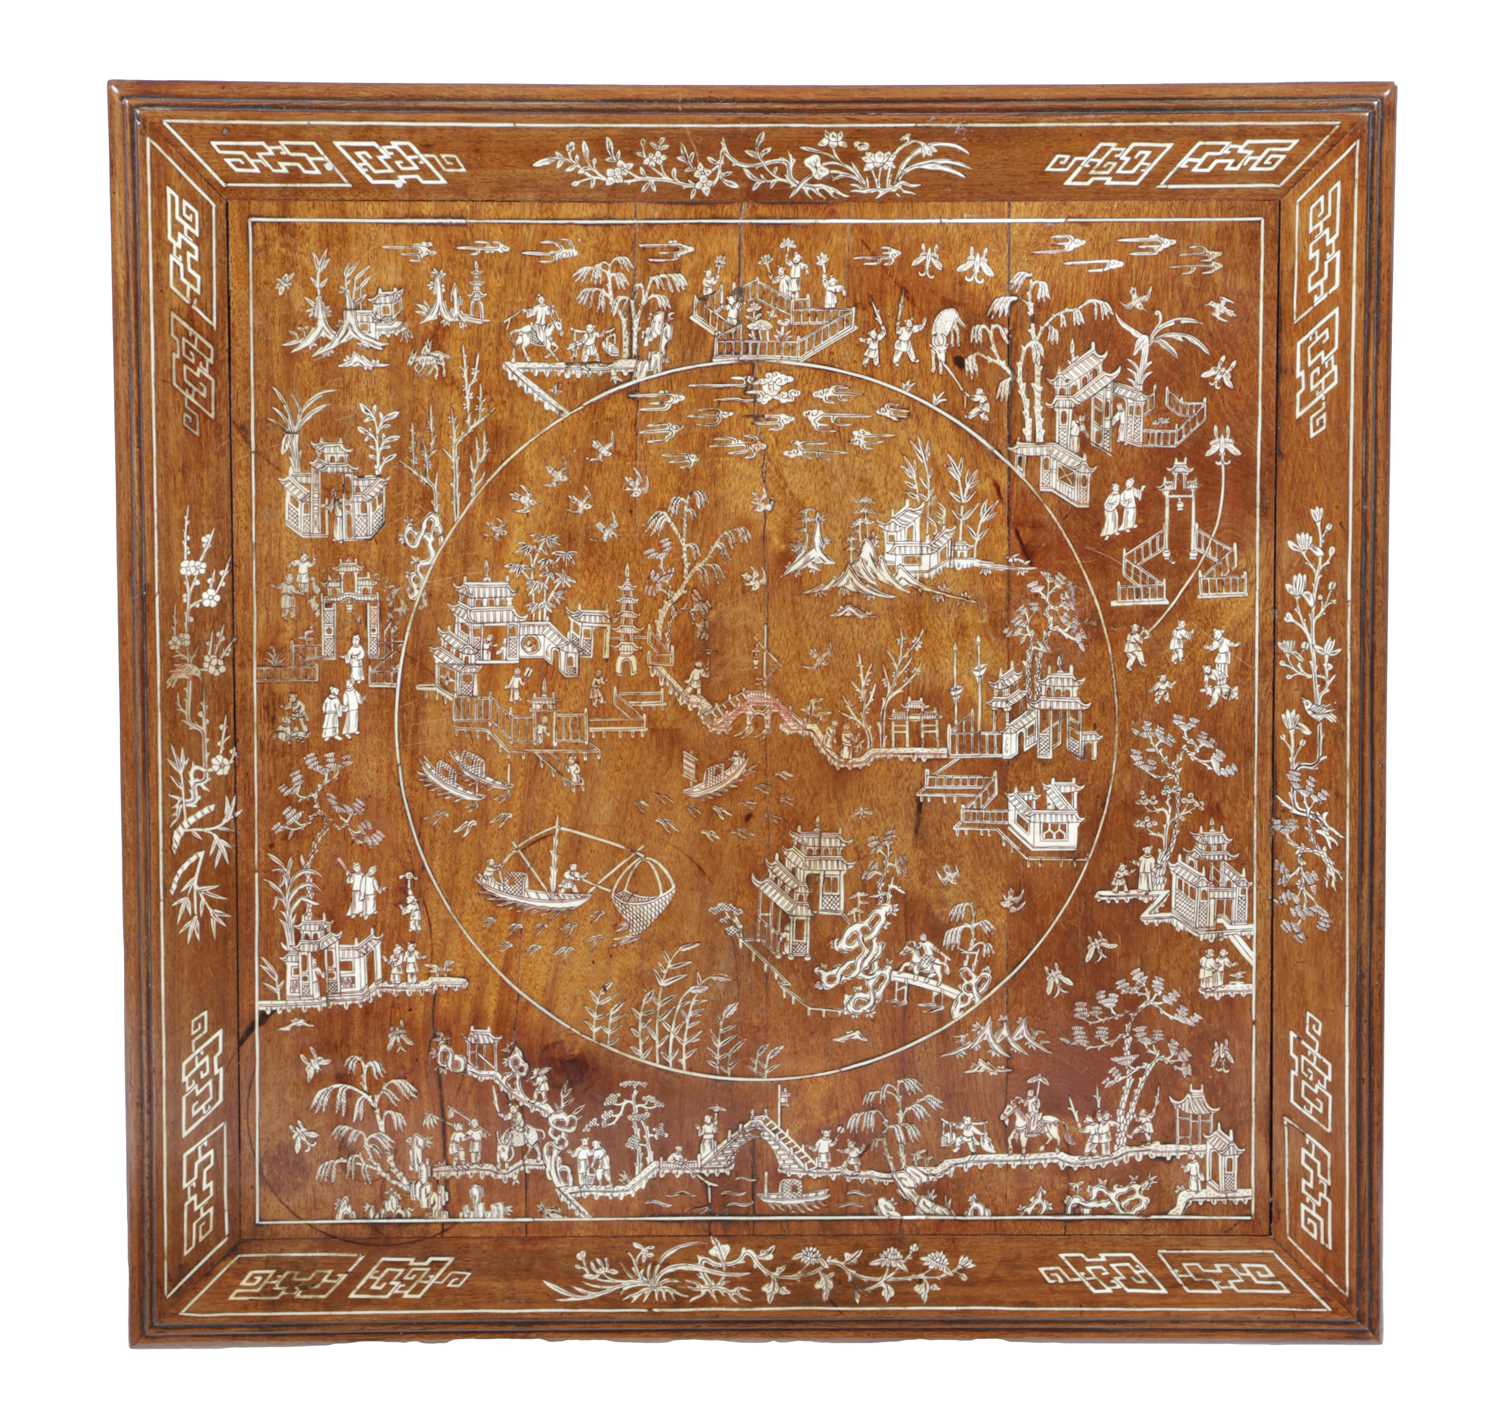 λ A CHINESE HARDWOOD OCCASIONAL TABLE LATE 19TH / EARLY 20TH CENTURY inlaid with bone and ivory, - Image 2 of 3